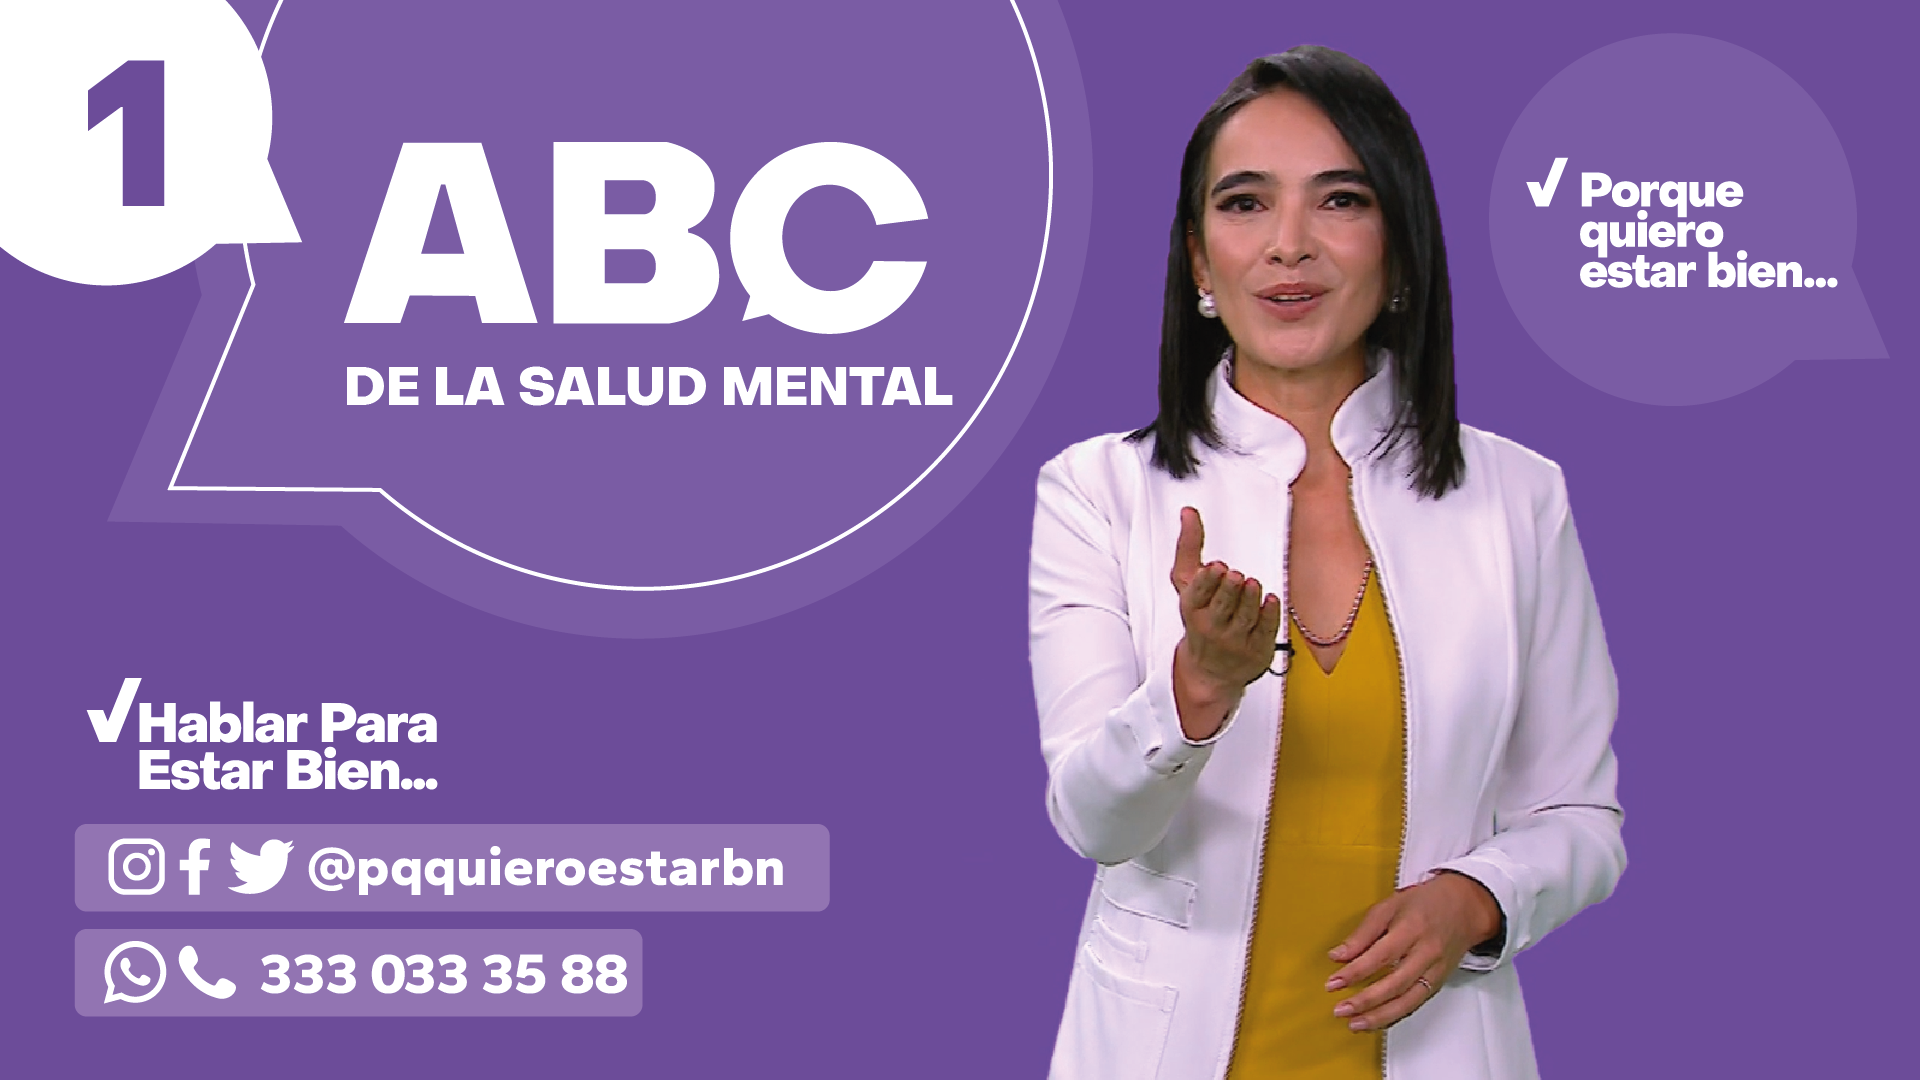 La serie digital #HablarParaEstarBien llega con un “ABC de la salud mental” 